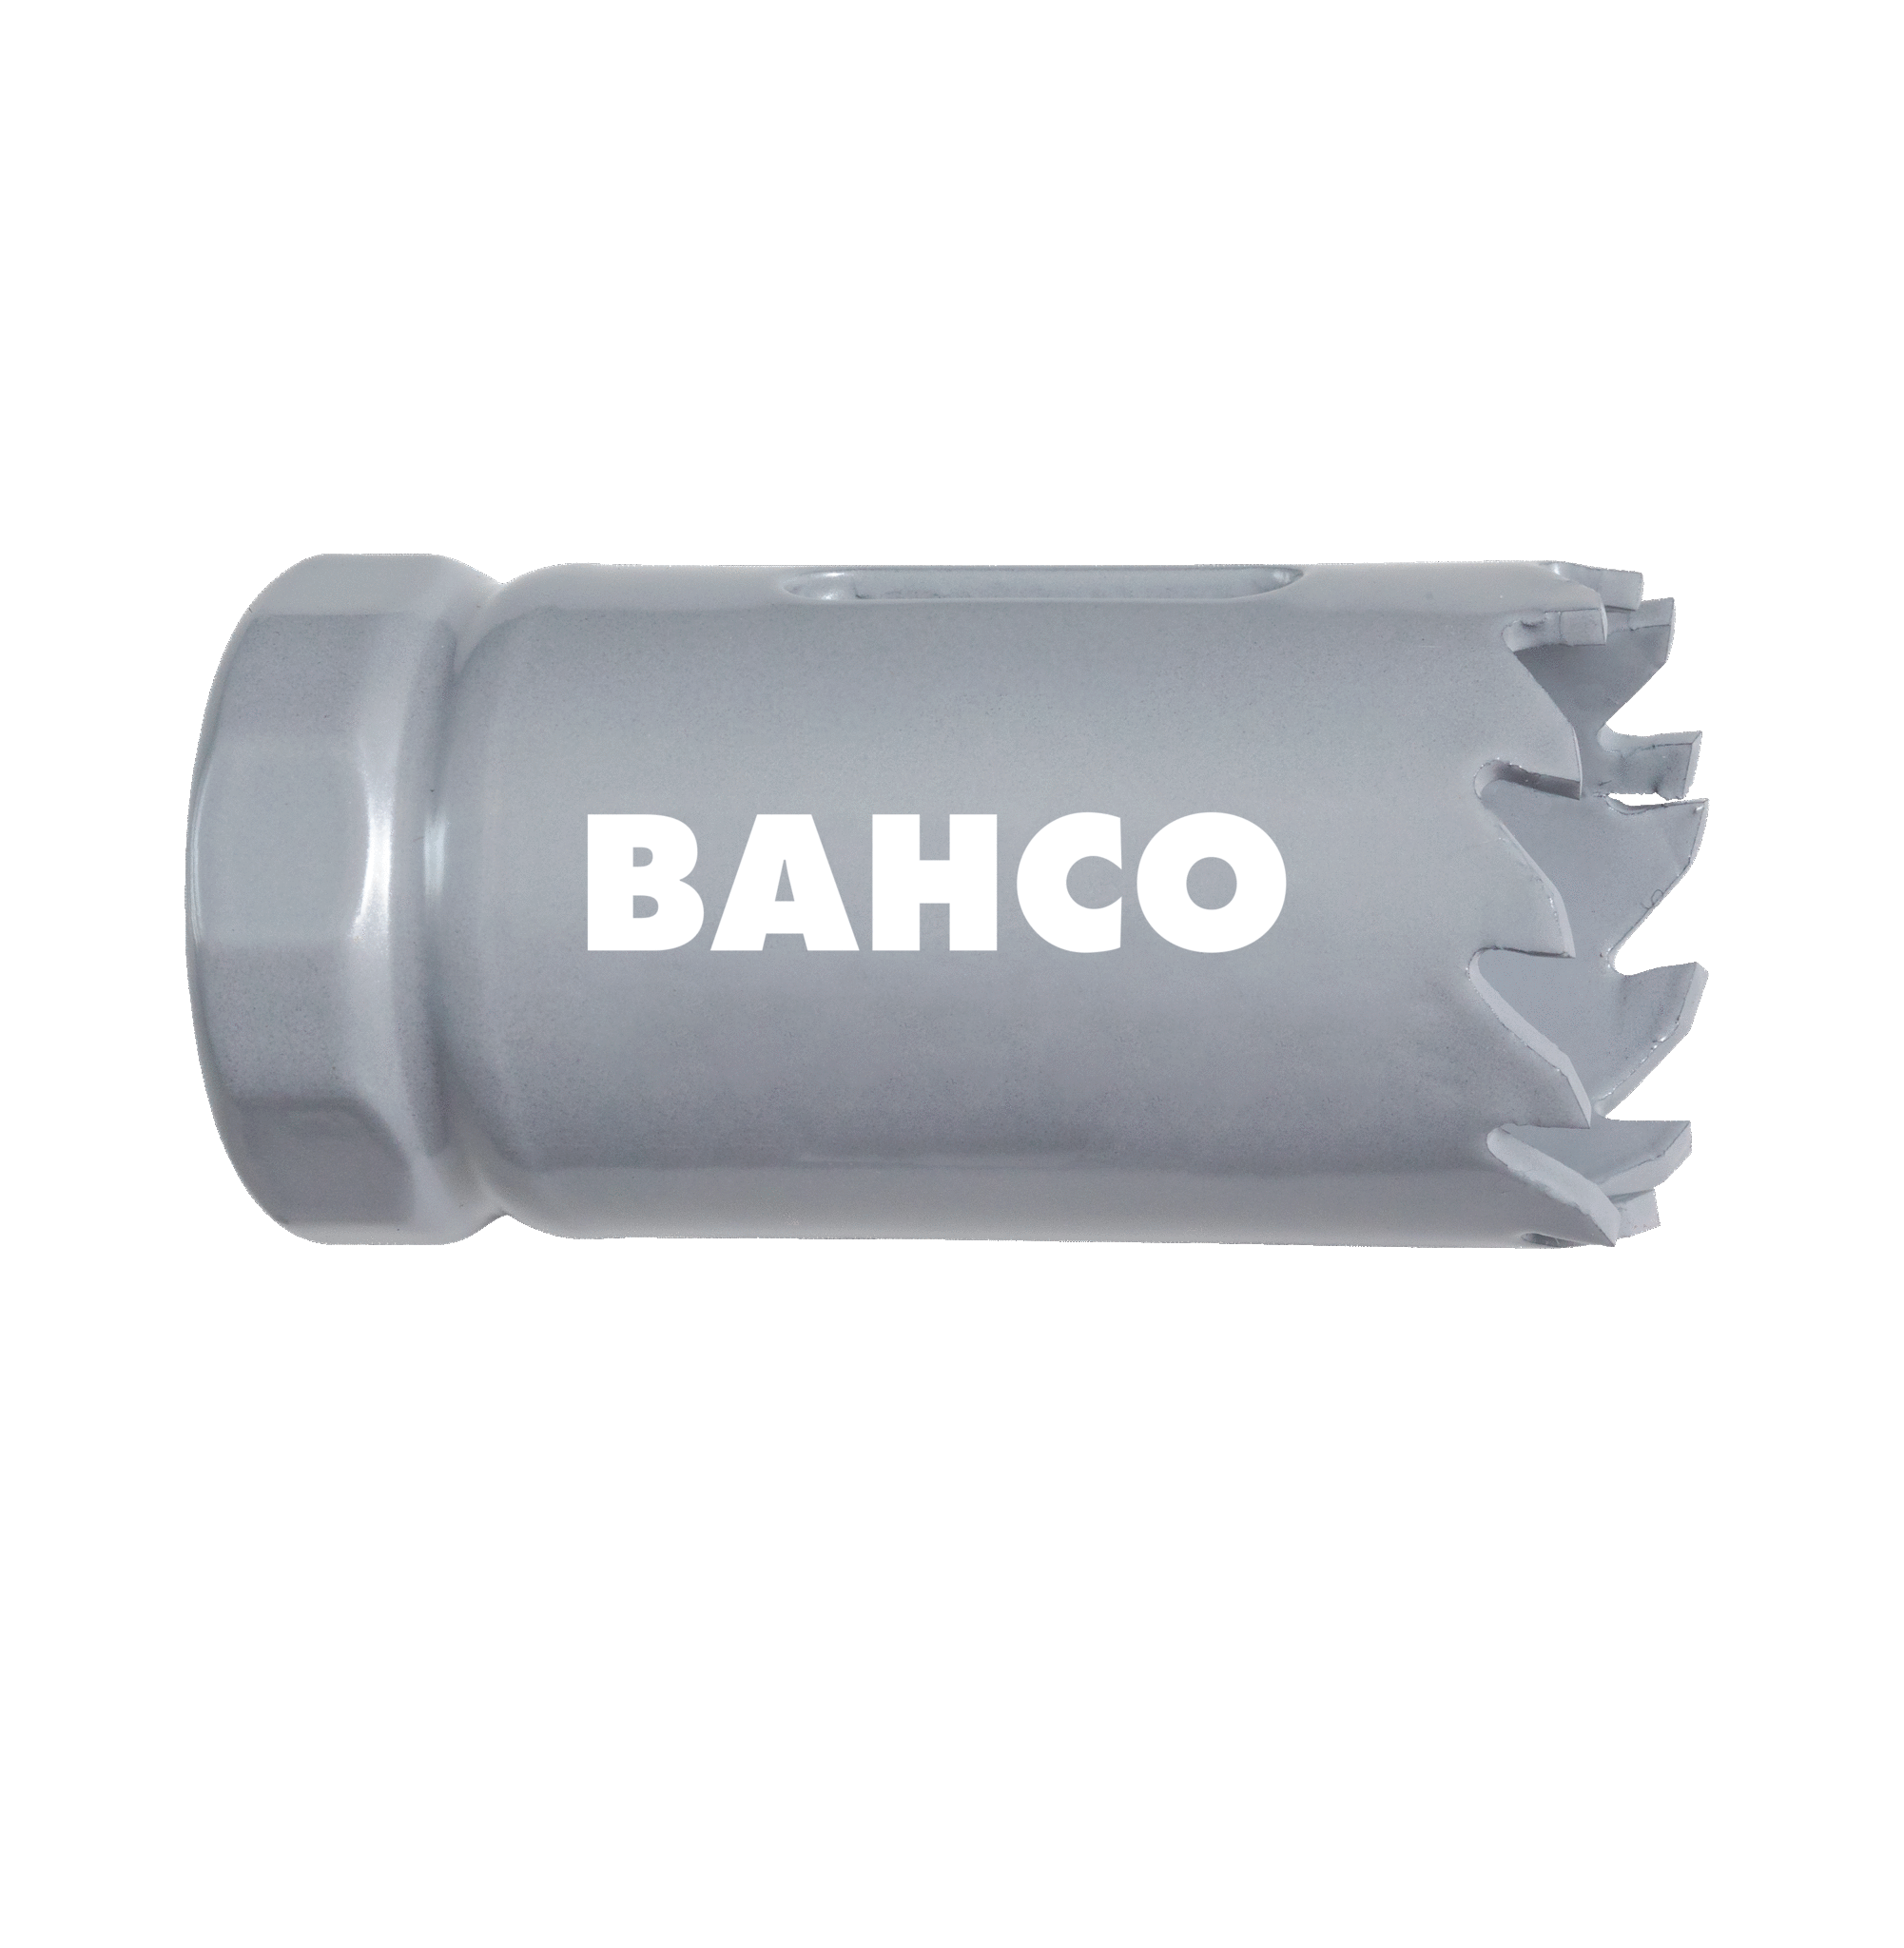 Кольцевые пилы с твердосплавными напайками BAHCO 3832-95